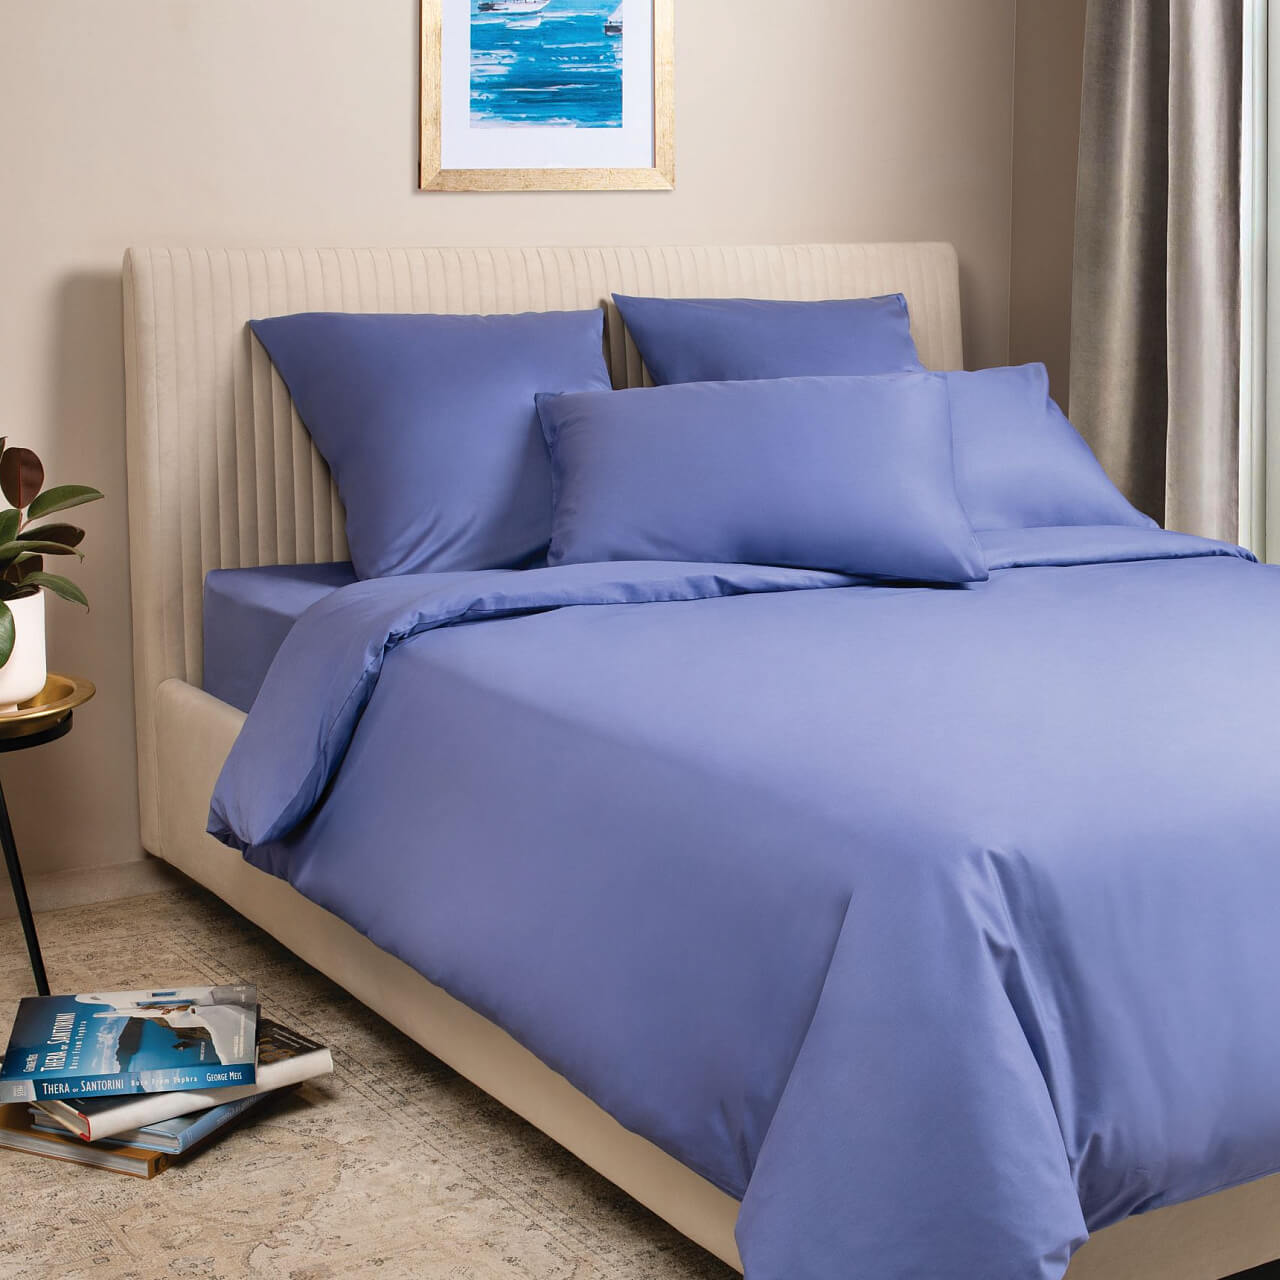 Синий постельное бельё из сатина Моноспейс Ecotex семейное